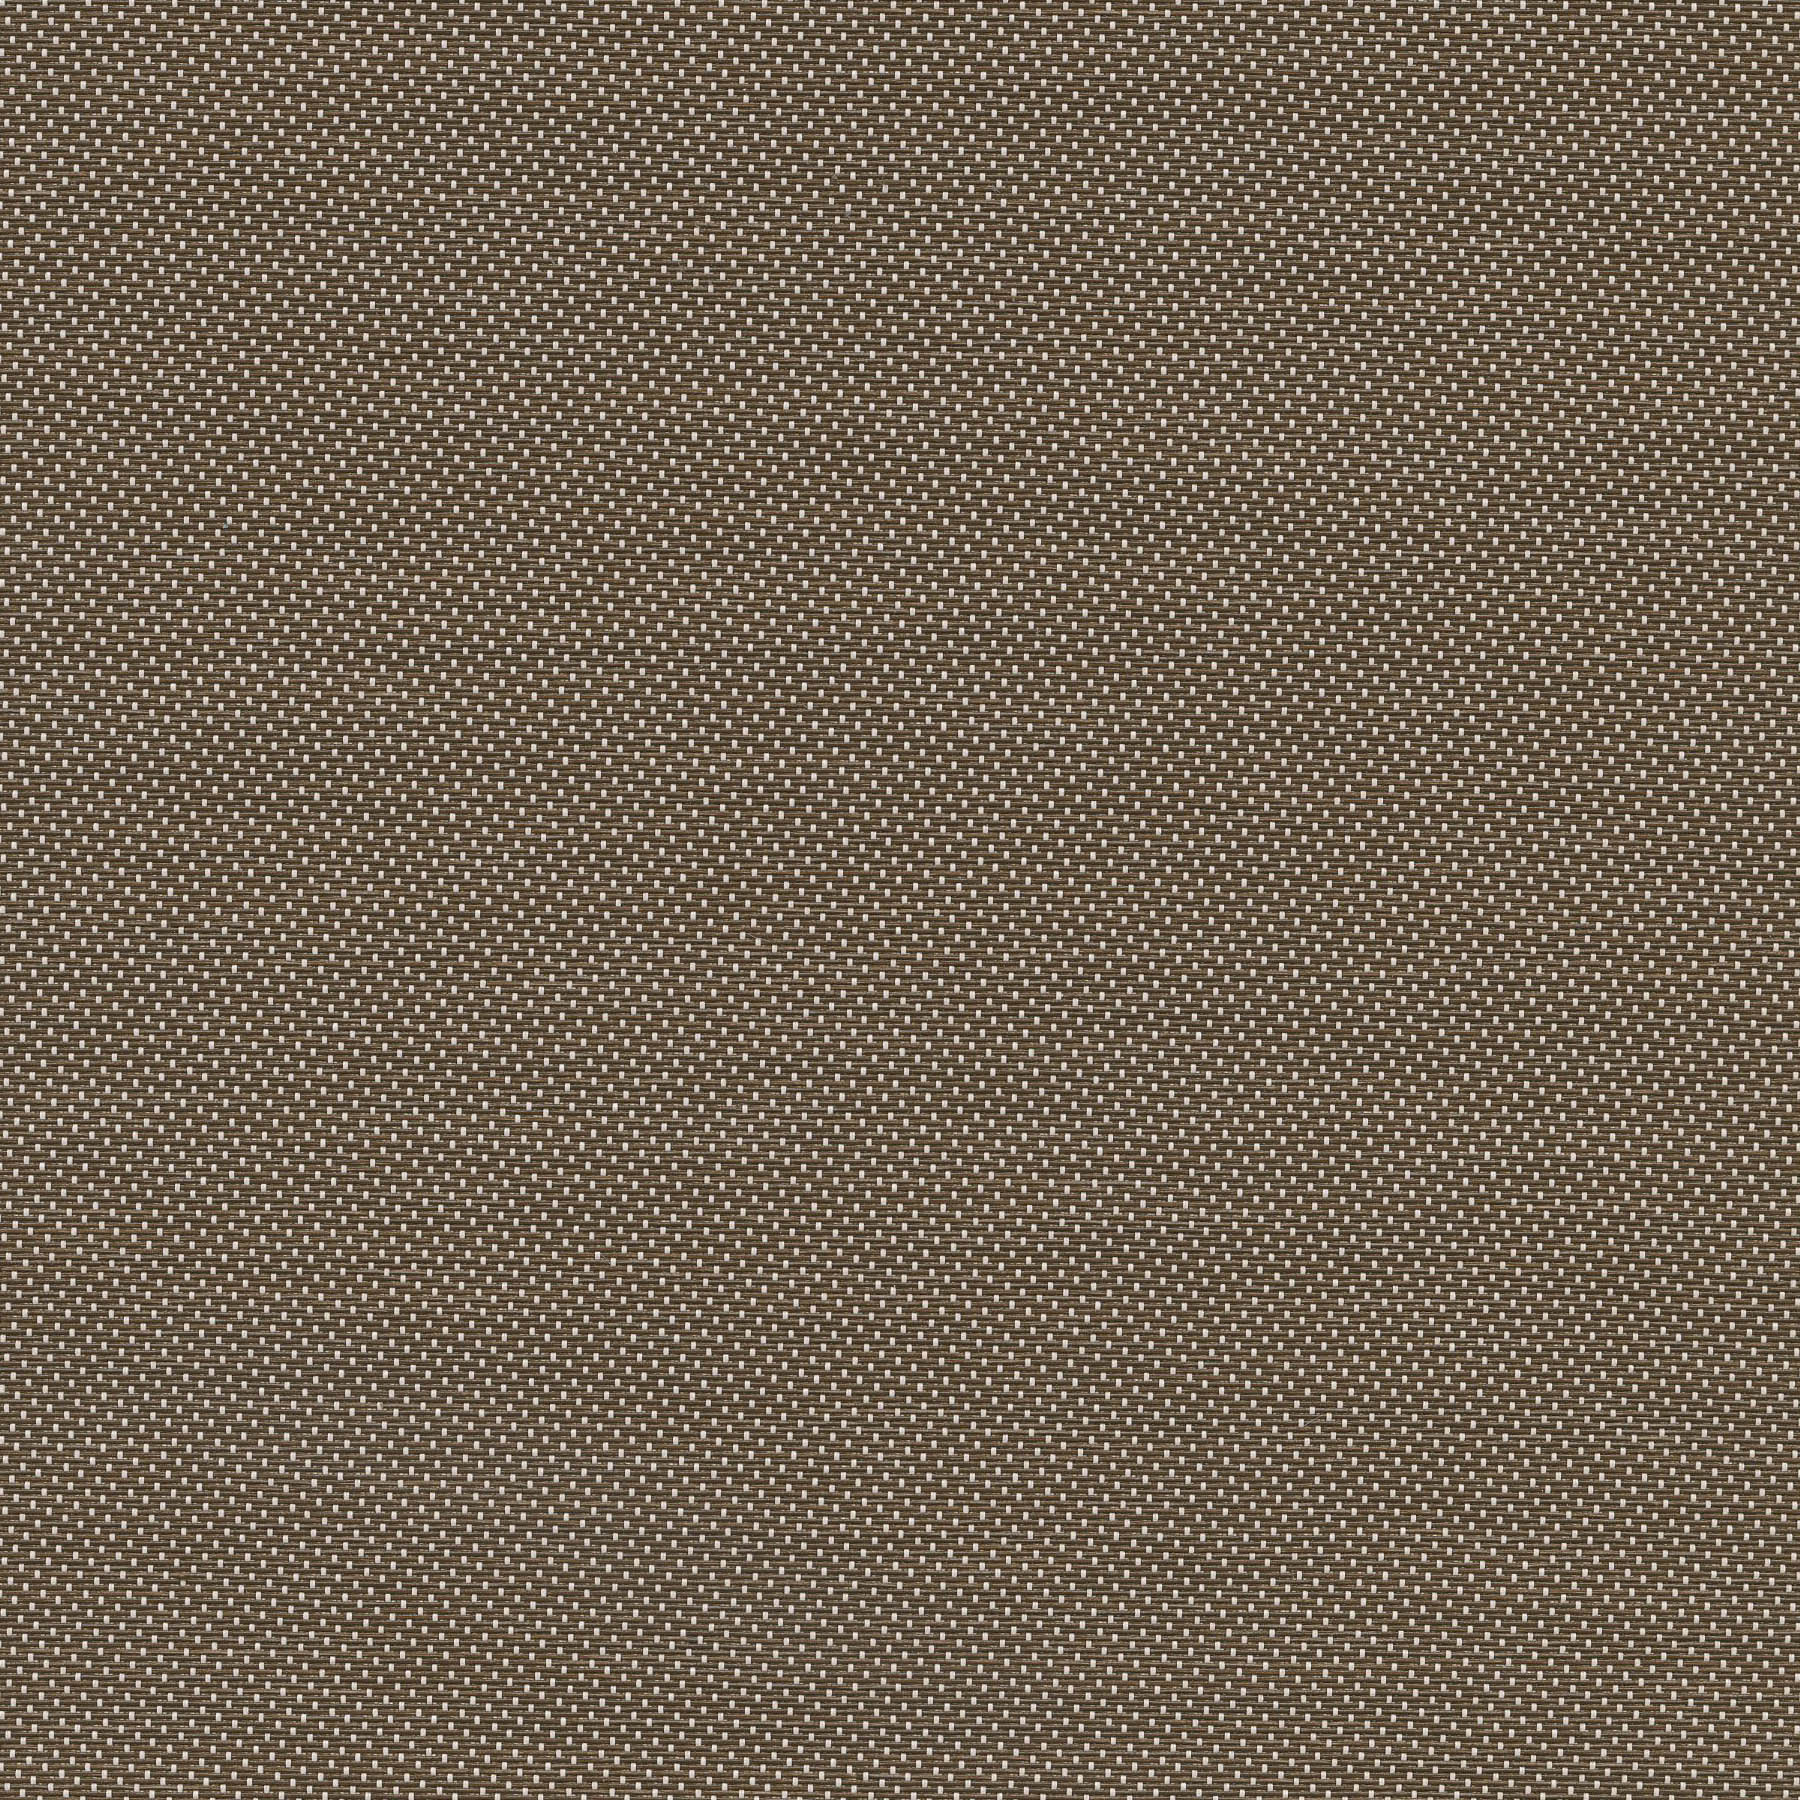 Altex - Tissu - SHEERWEAVE 2703 - Bronze/Blanc - 164